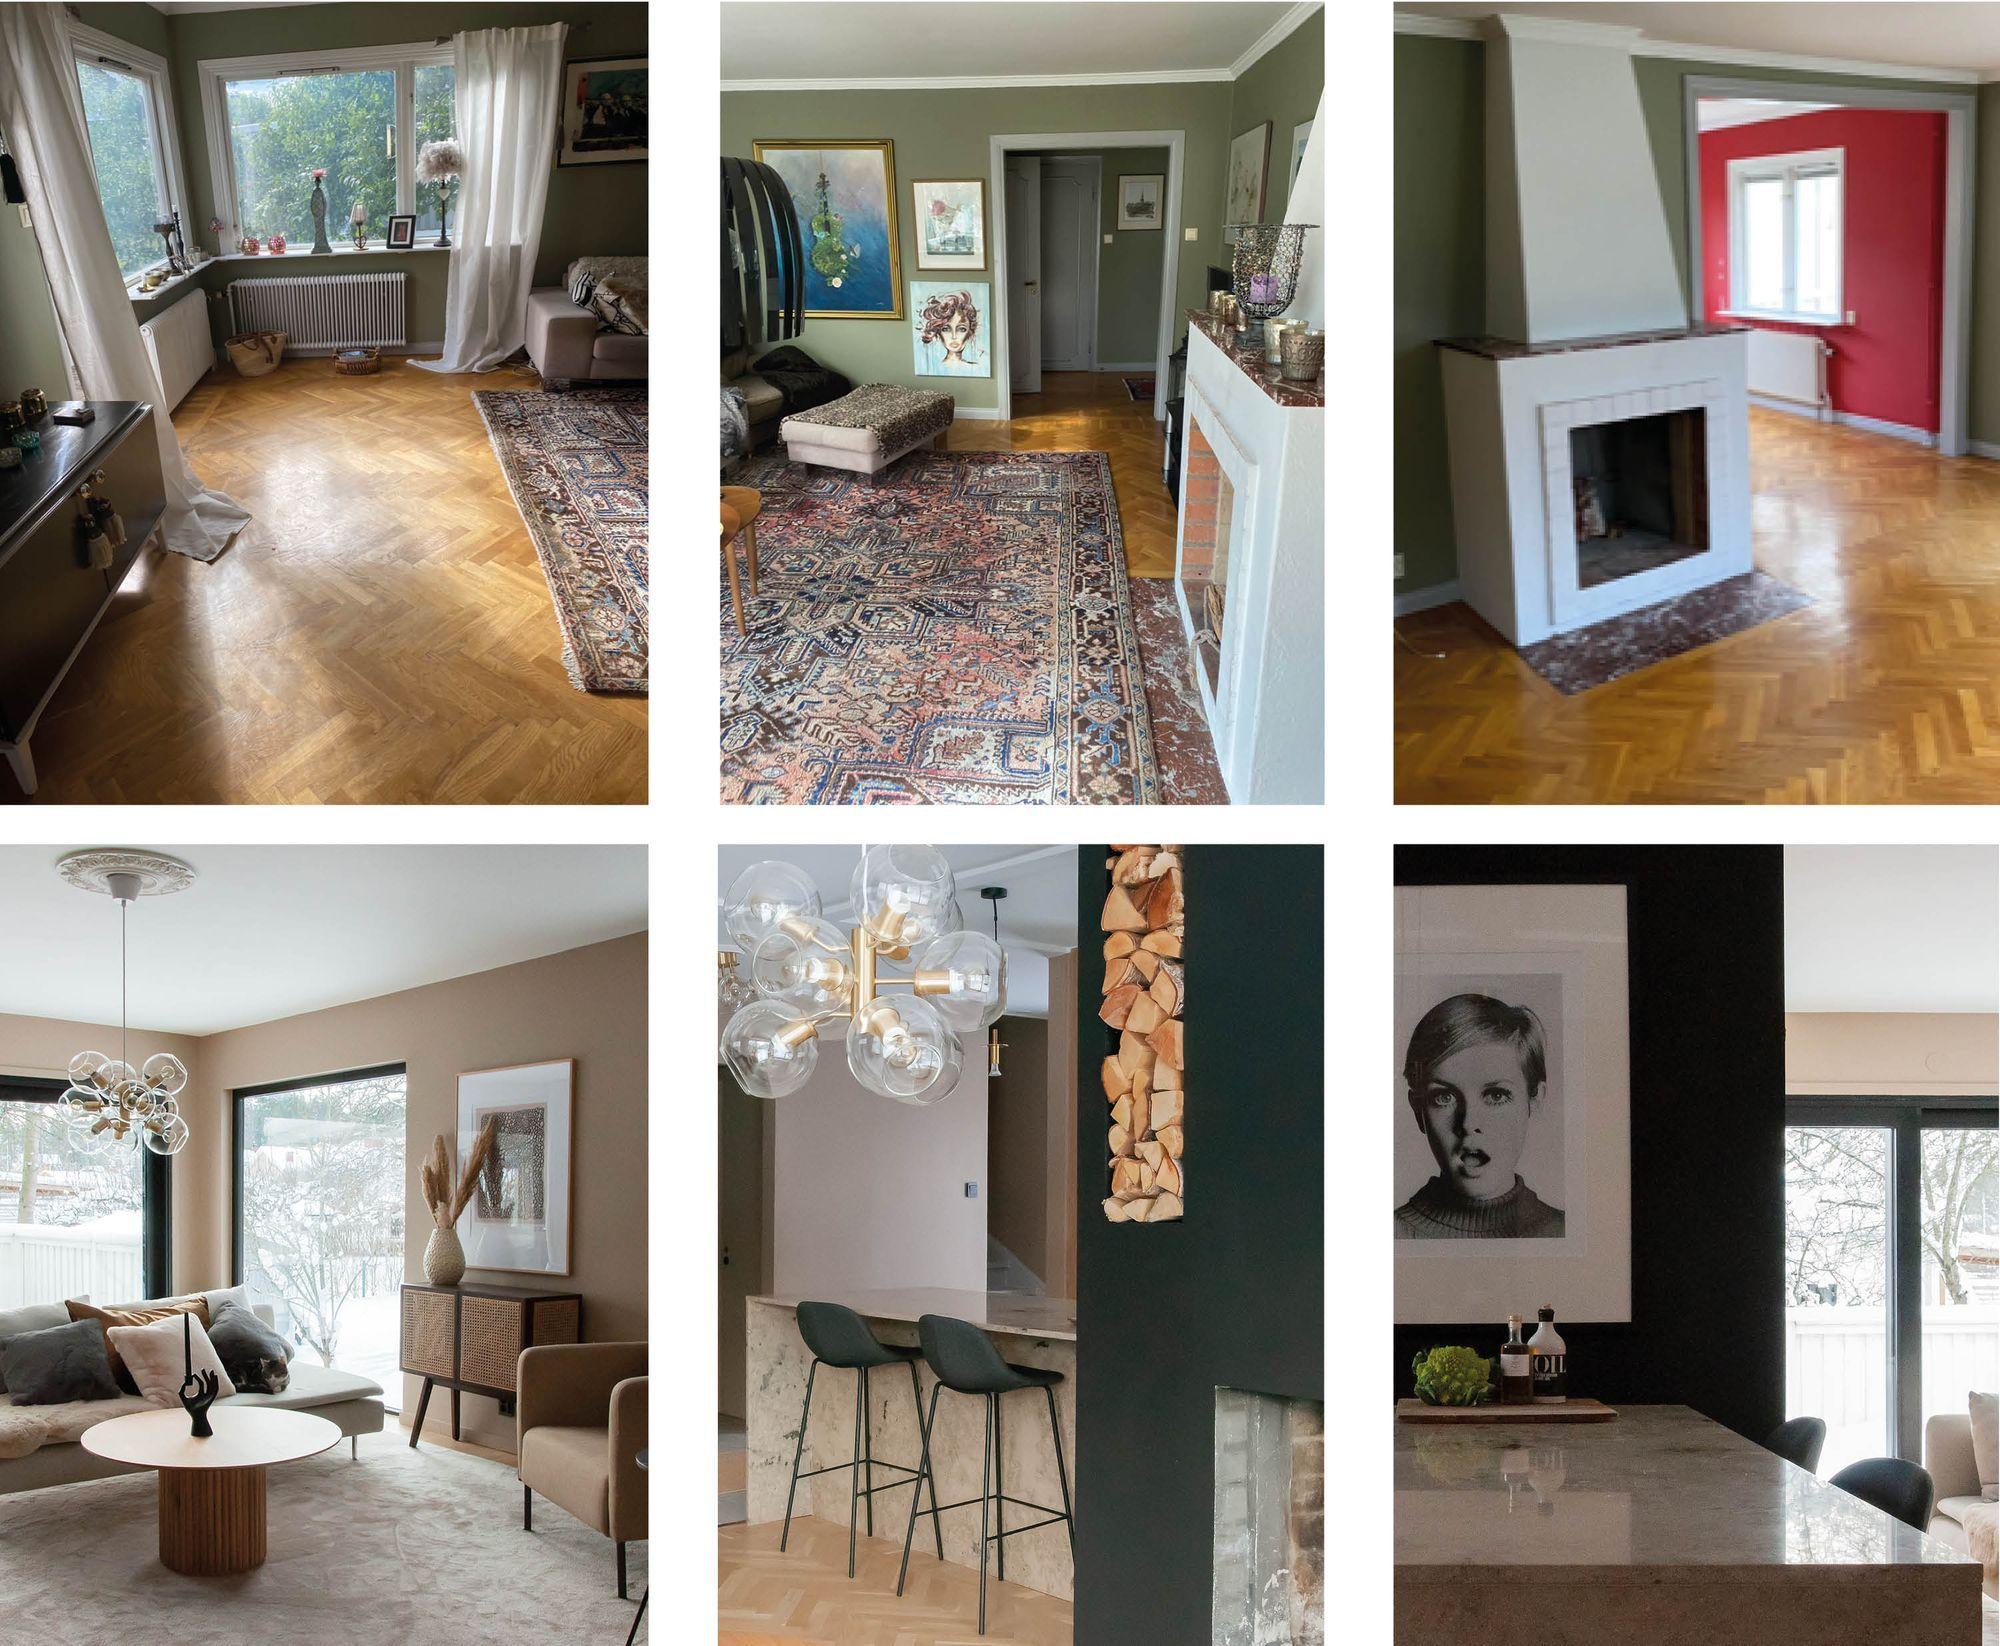 Bildkollage med före och efter bilder på en renovering i ett hus